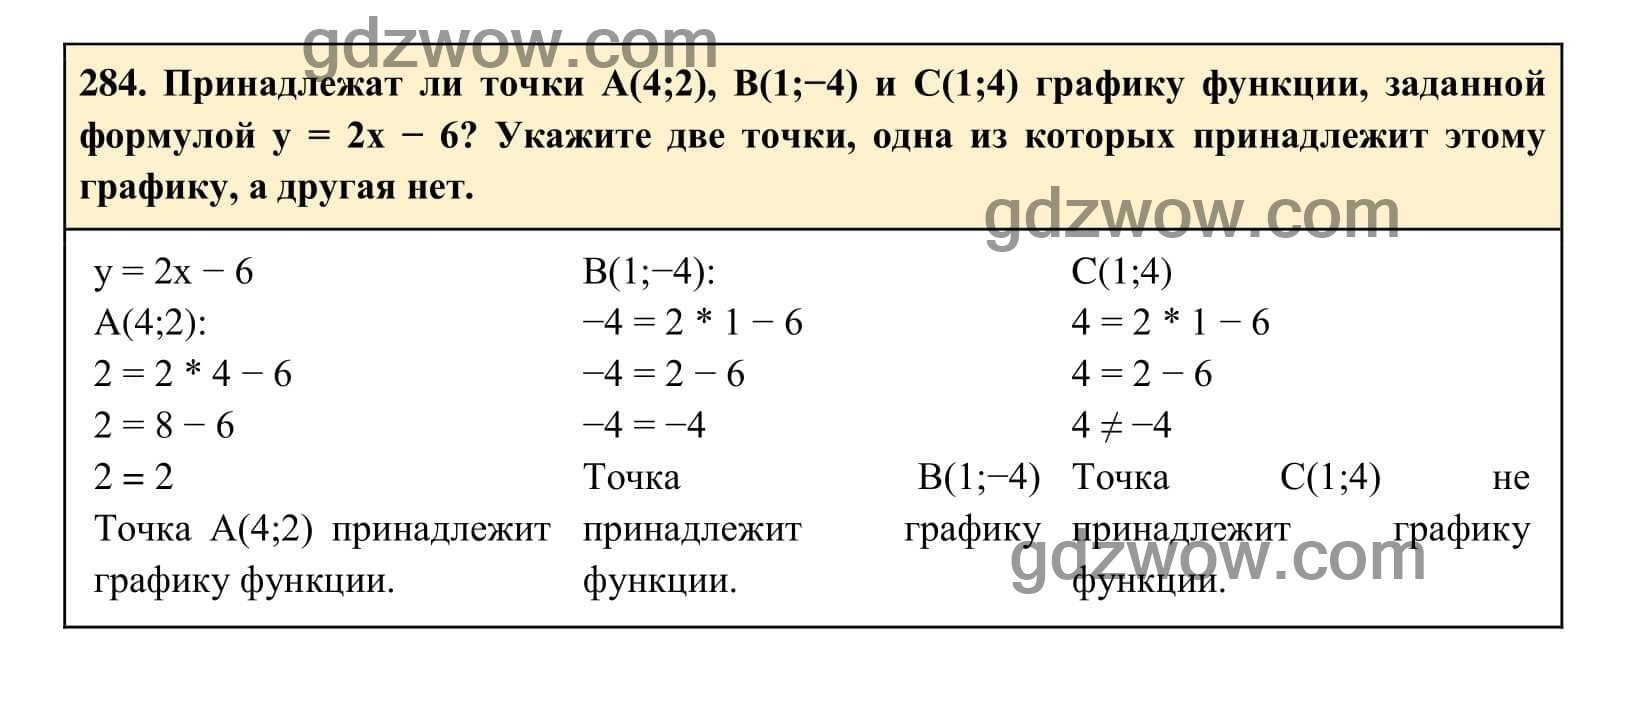 Упражнение 284 - ГДЗ по Алгебре 7 класс Учебник Макарычев (решебник) - GDZwow